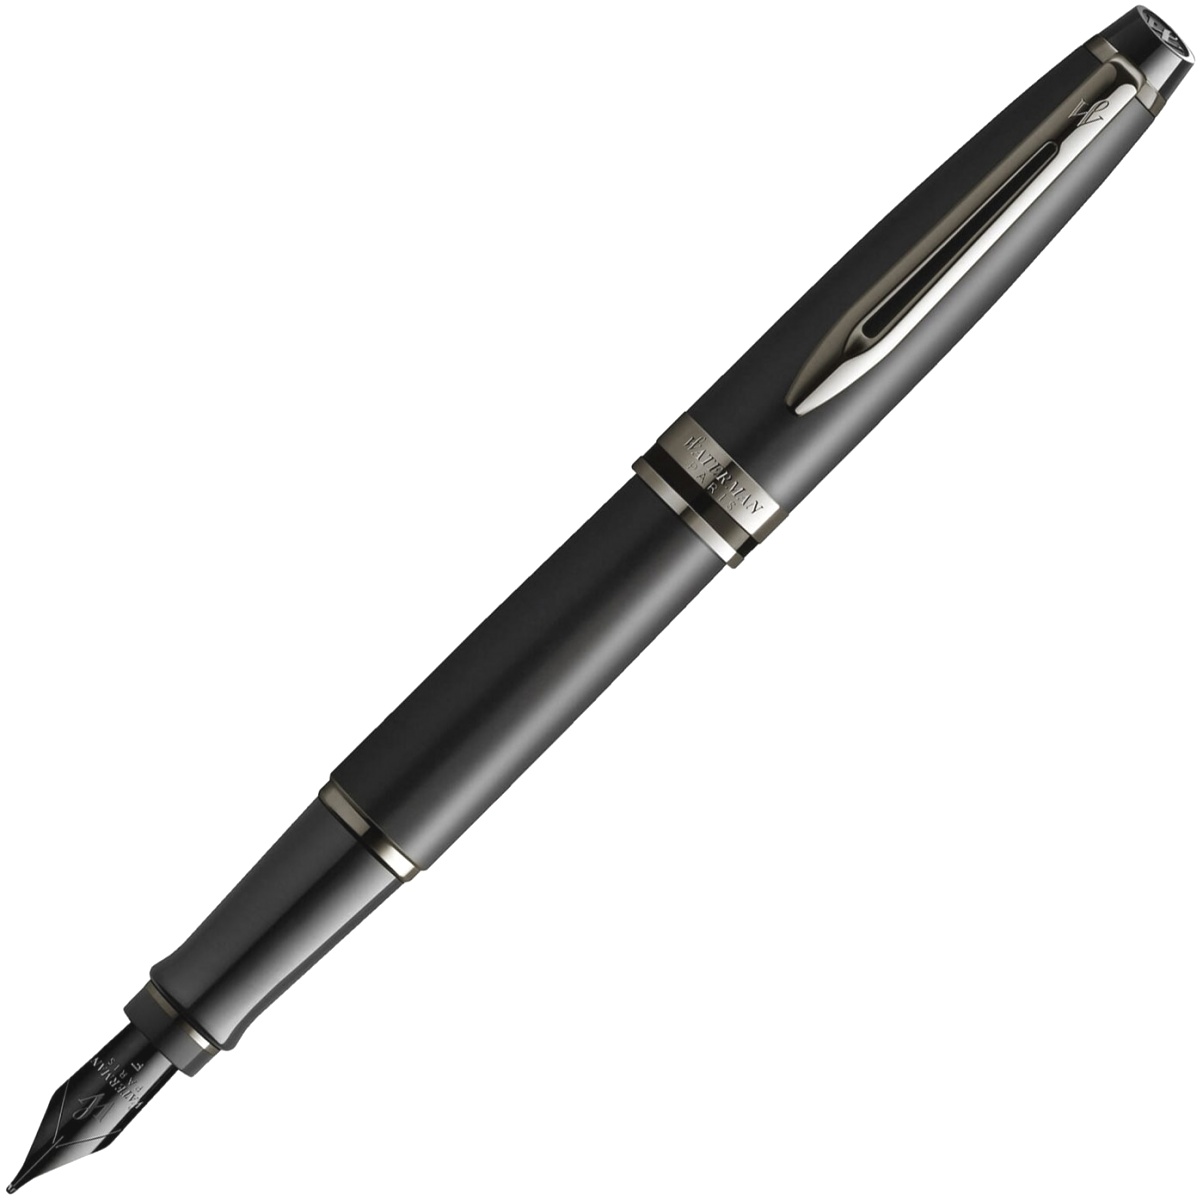  Ручка перьевая Waterman Expert DeLuxe, Metallic Black RT (Перо F)